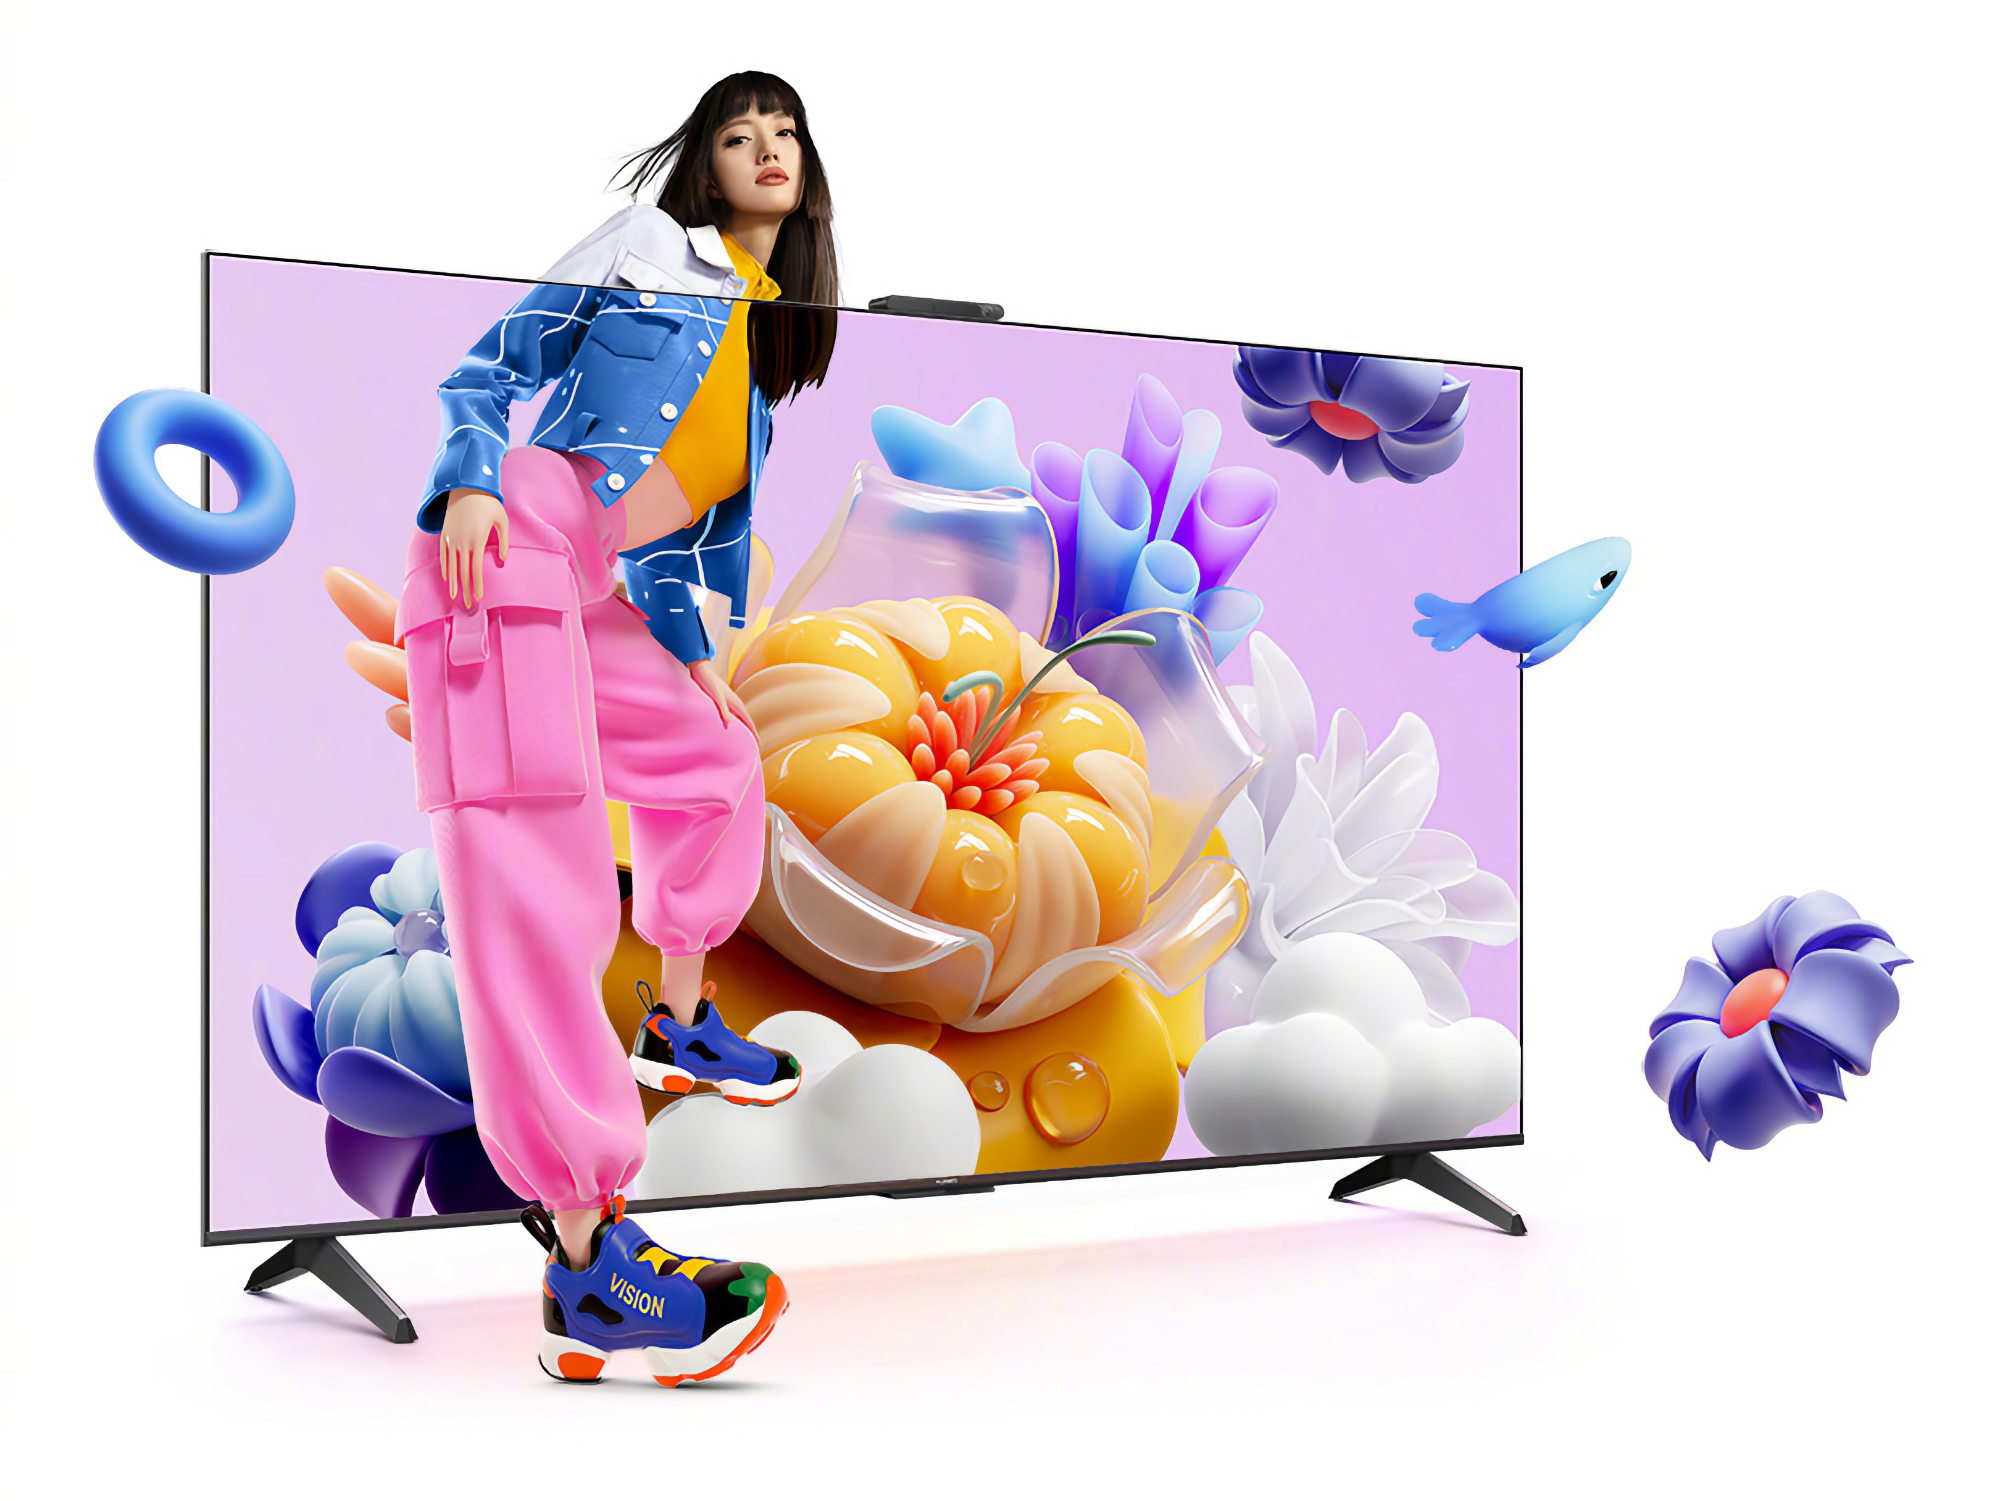 Huawei Vision Smart TV SE3: een reeks slimme tv's met 4K-schermen bij 120Hz en HarmonyOS aan boord, geprijsd vanaf $340